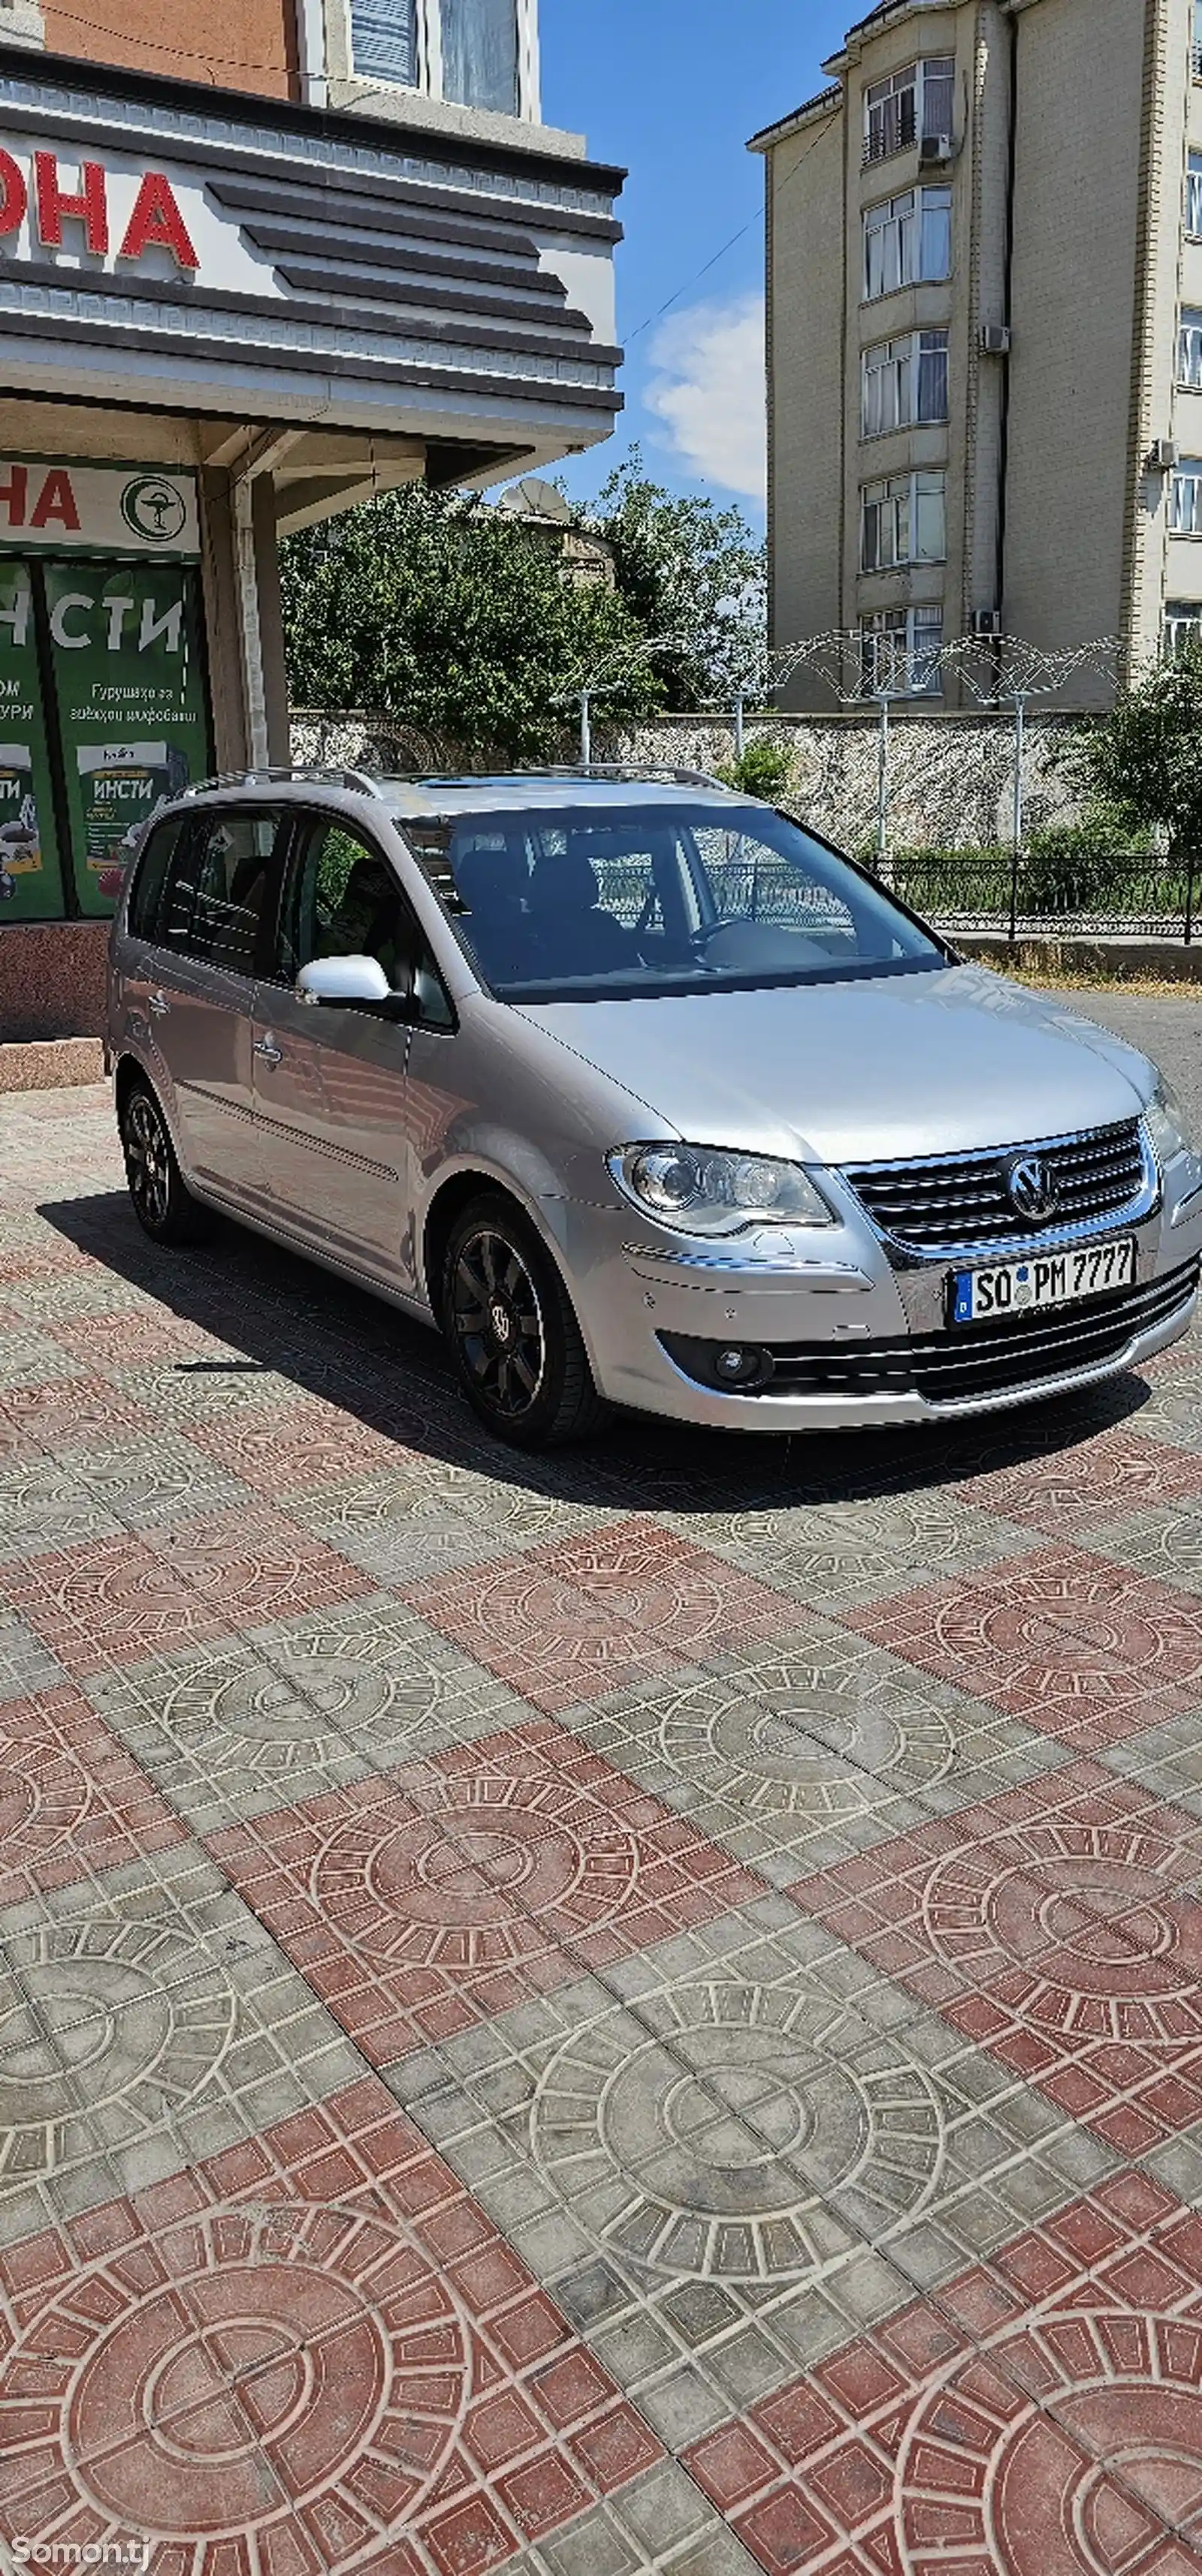 Volkswagen Touran, 2008-2